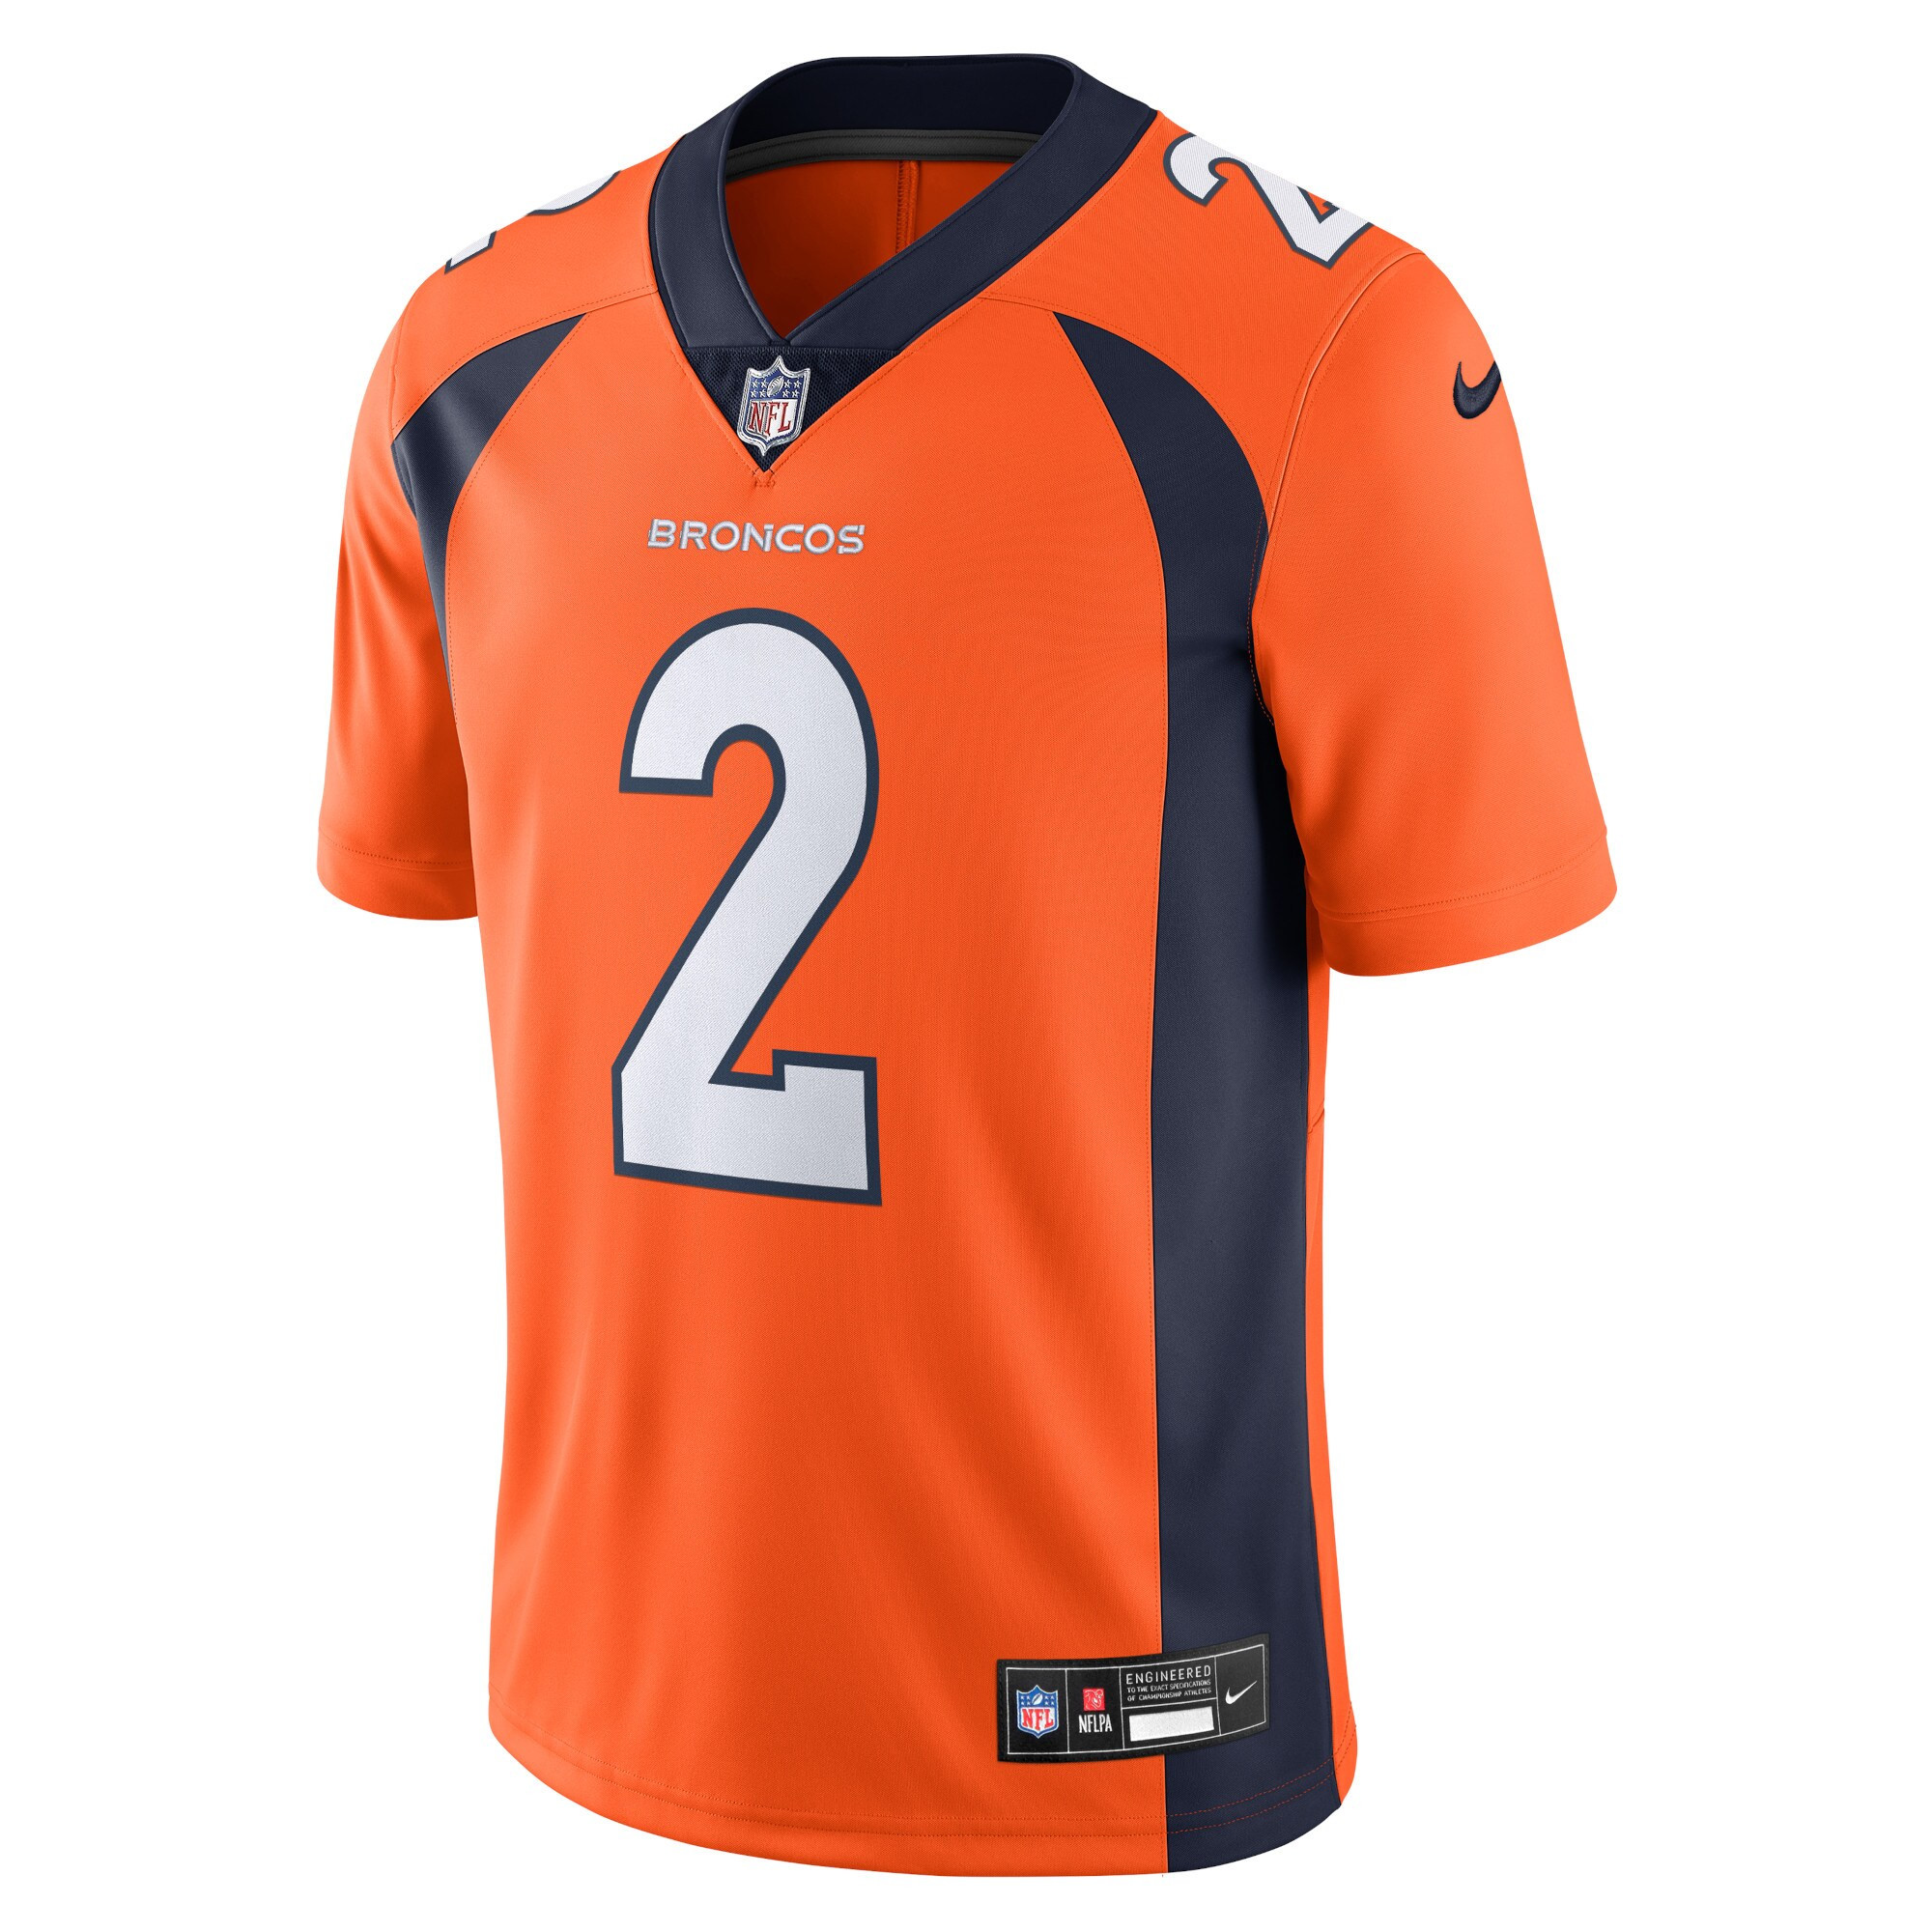 Men's Patrick Surtain II Denver Broncos  Vapor Untouchable Limited Jersey - Orange